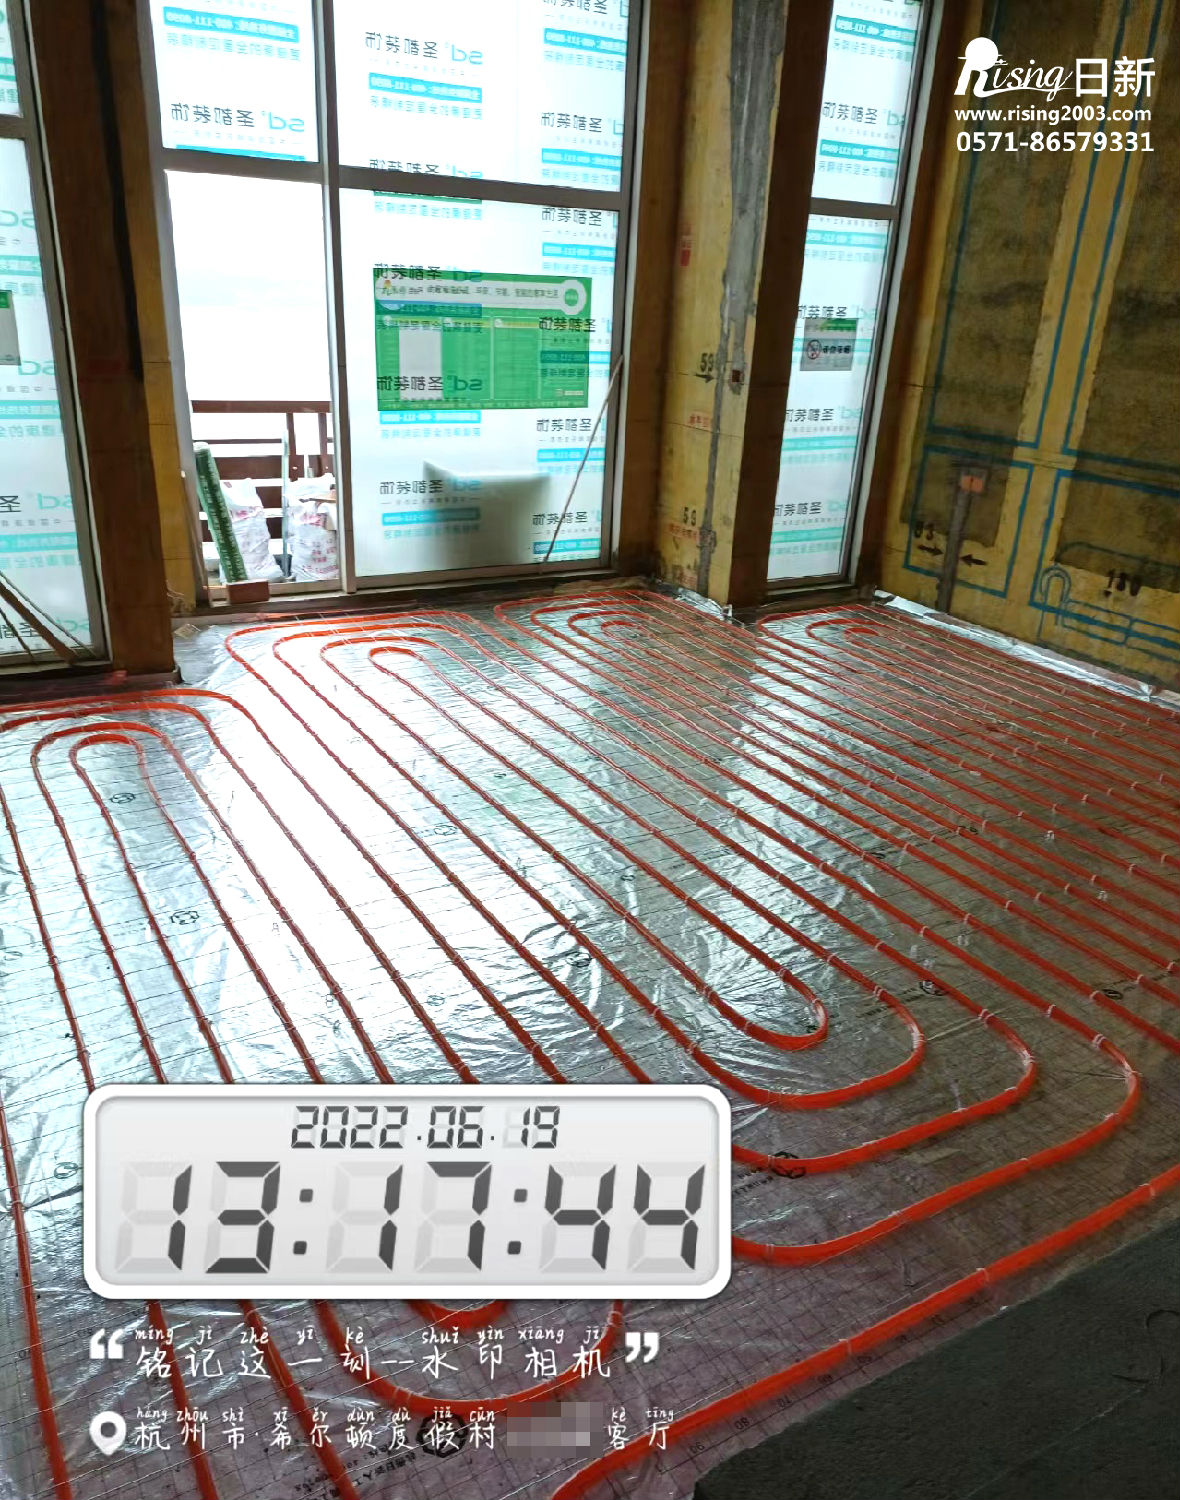 千岛湖希尔顿度假村风冷热泵系统项目地暖阶段【日新环境】